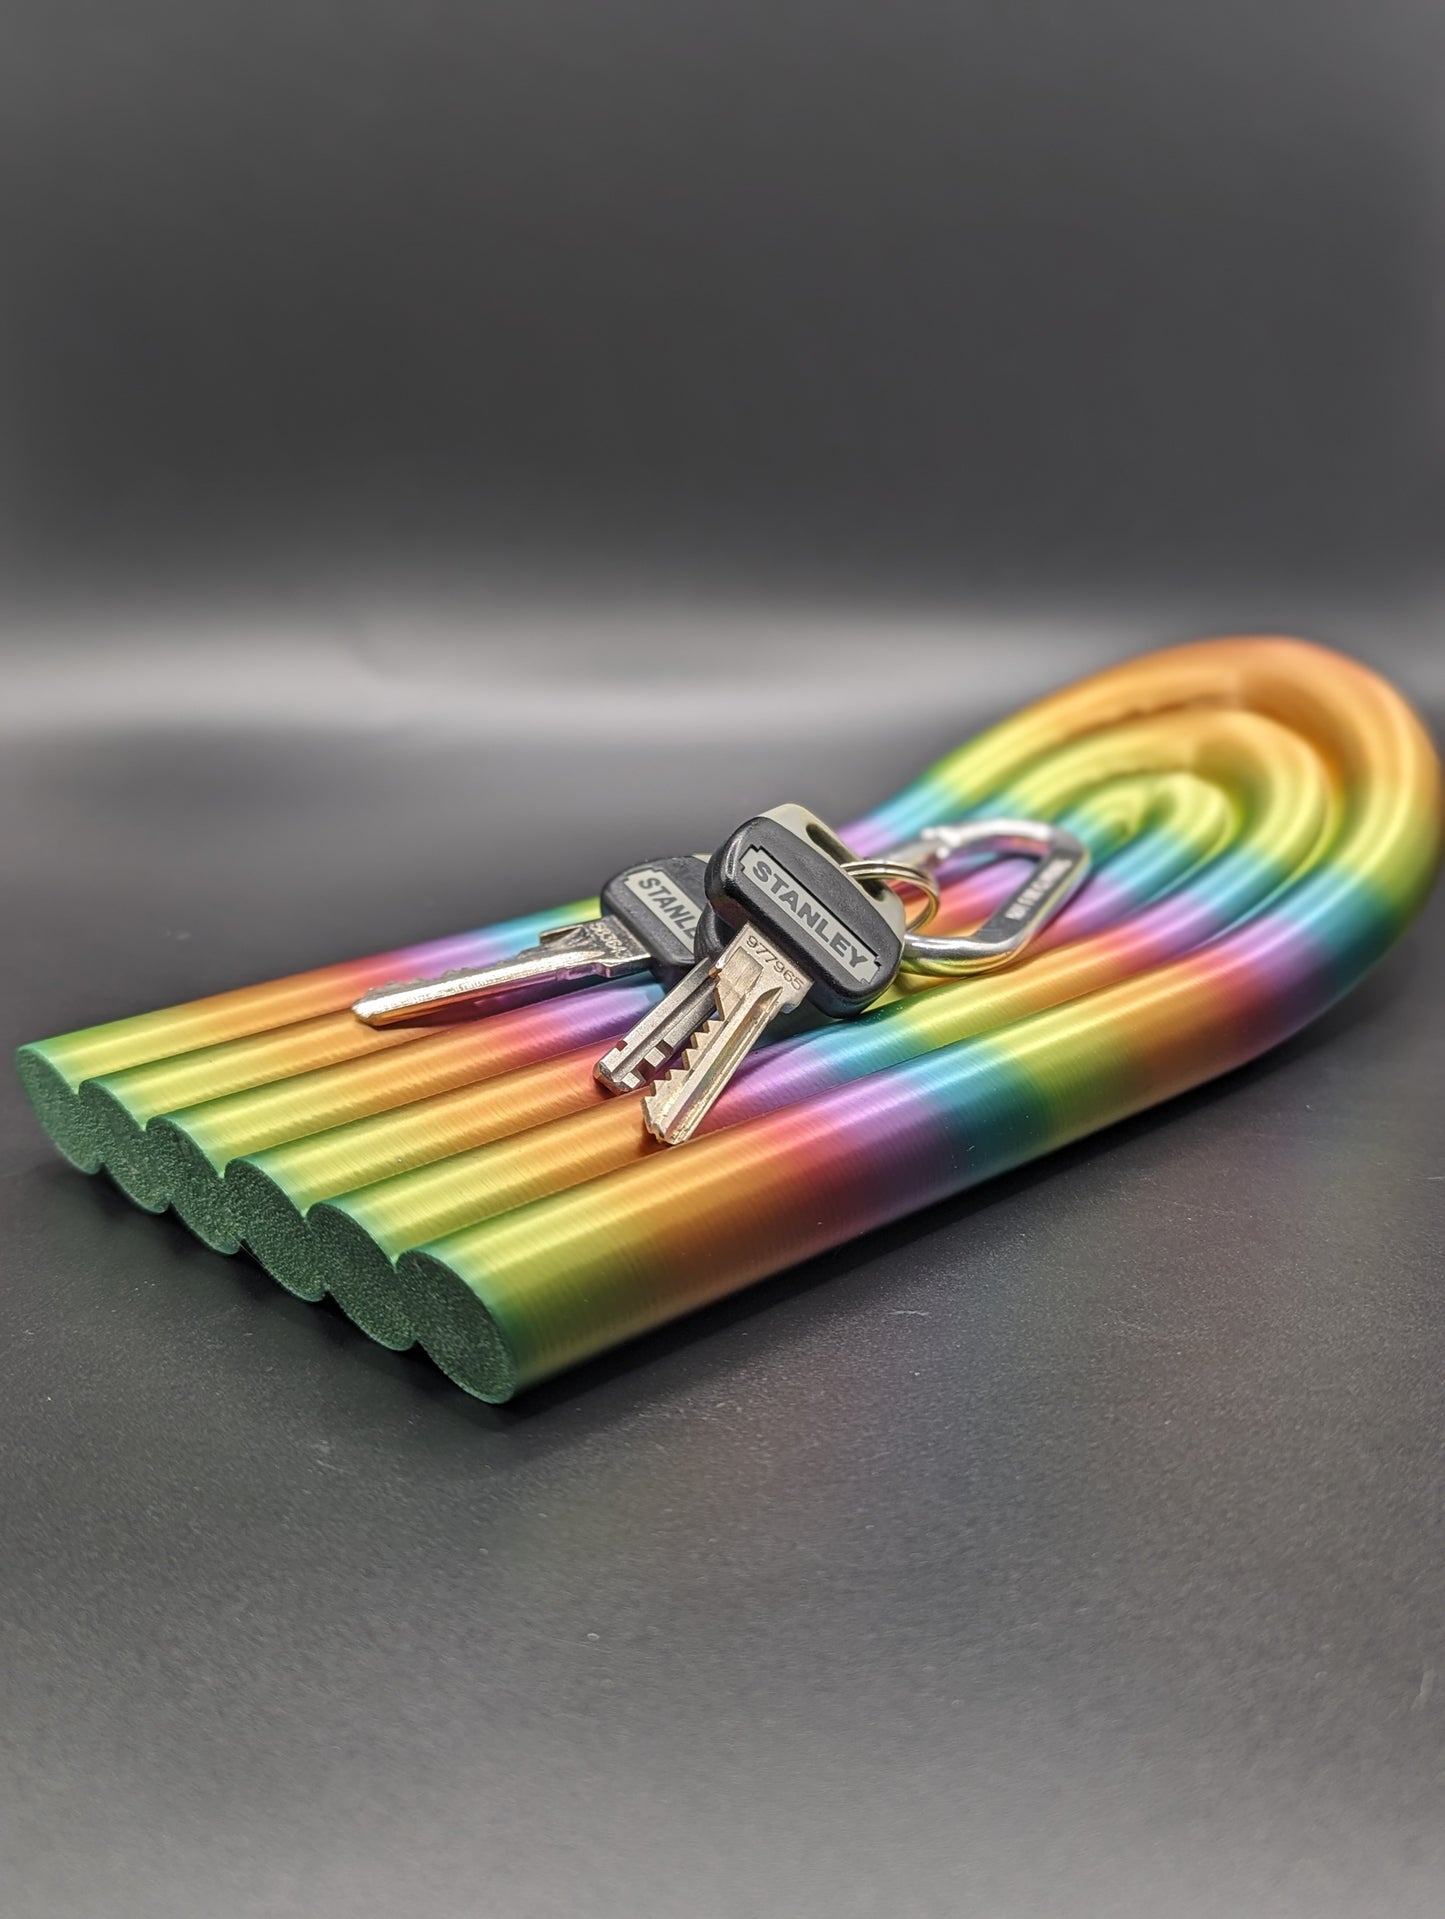 The Rainbow Tray (Accessory Holder, Key Holder, Decorative Tray)